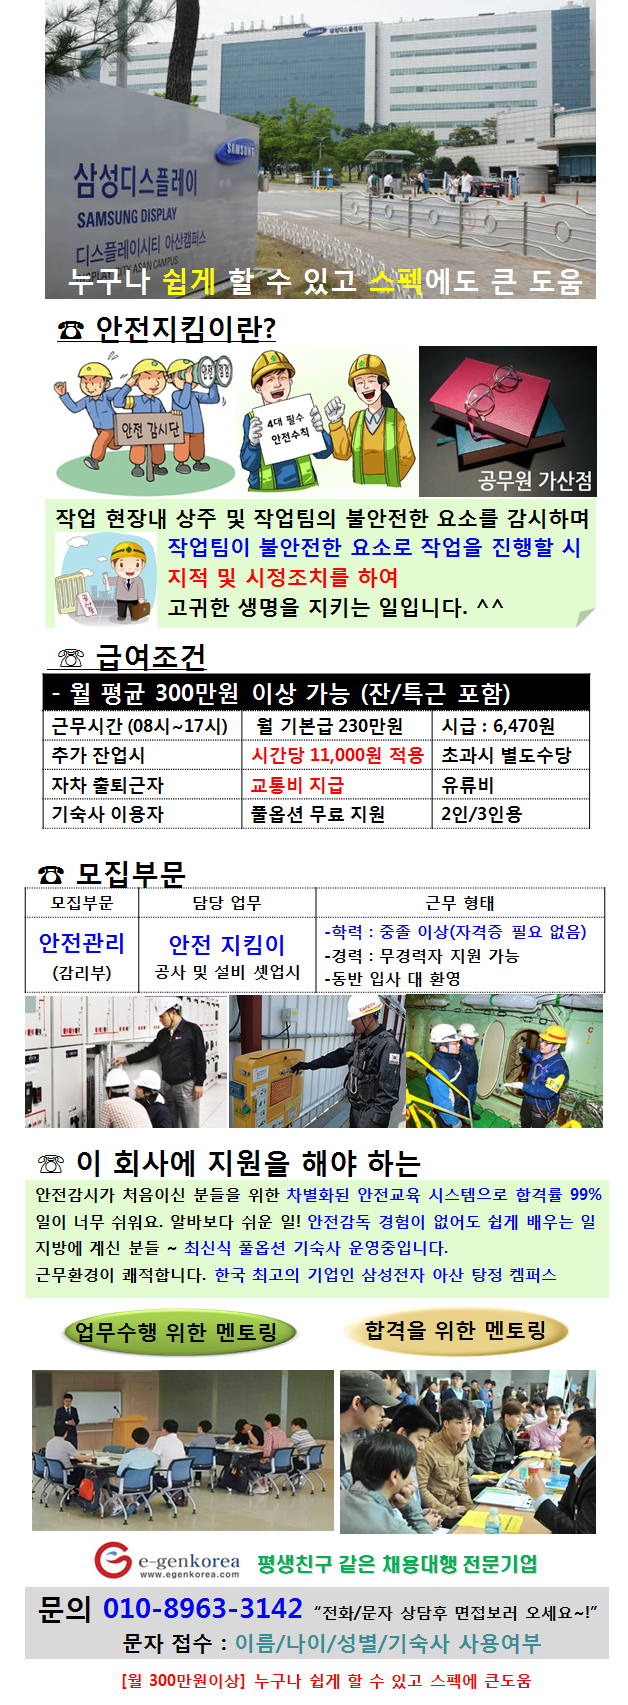 평택/아산 삼성 사업장 안전관리 요원 정규직 채용